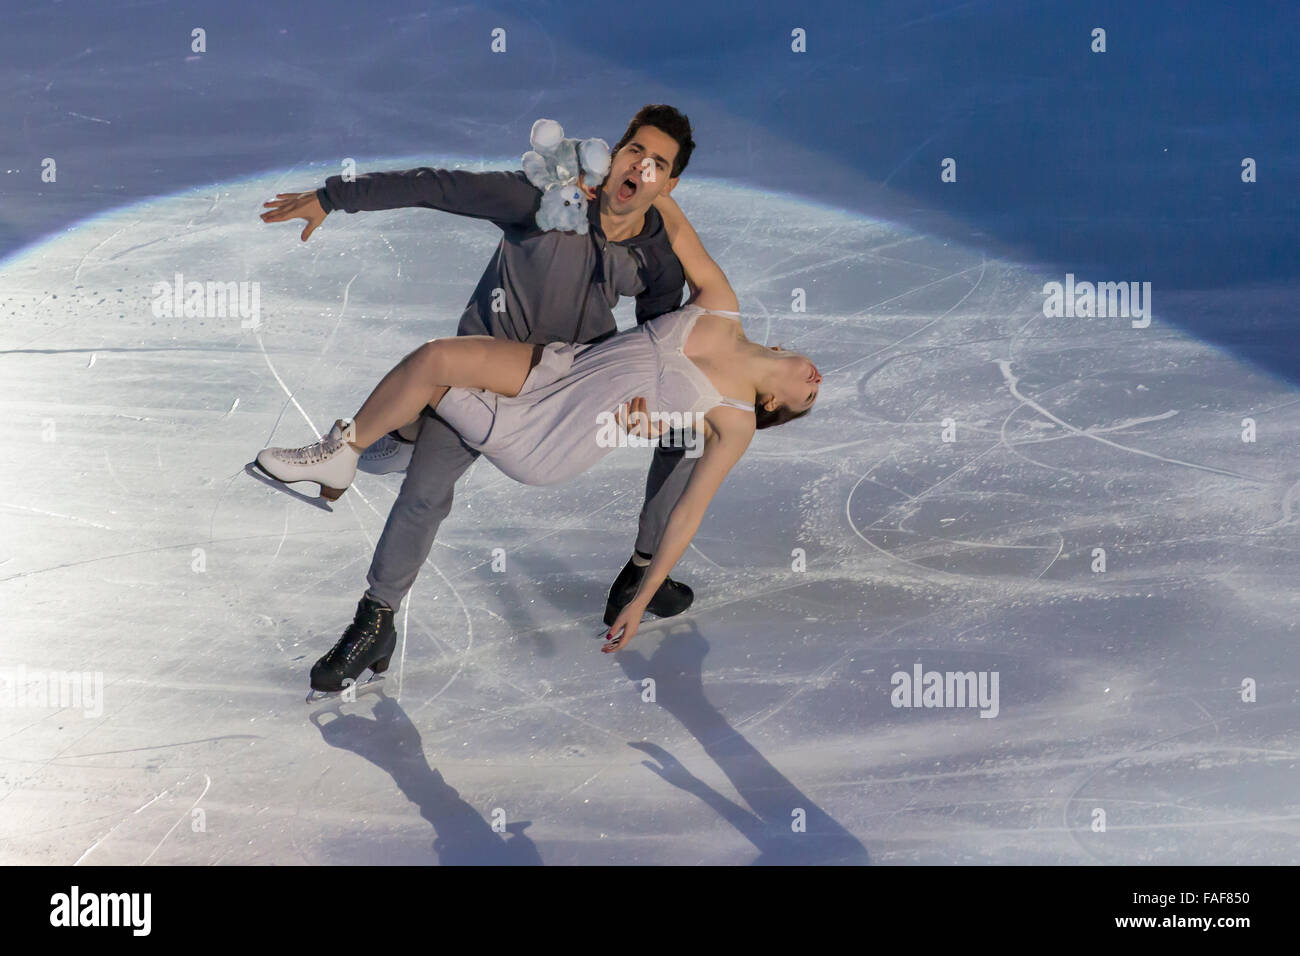 Anna Cappellini e Lucalanotte, la danza su ghiaccio champions Foto Stock